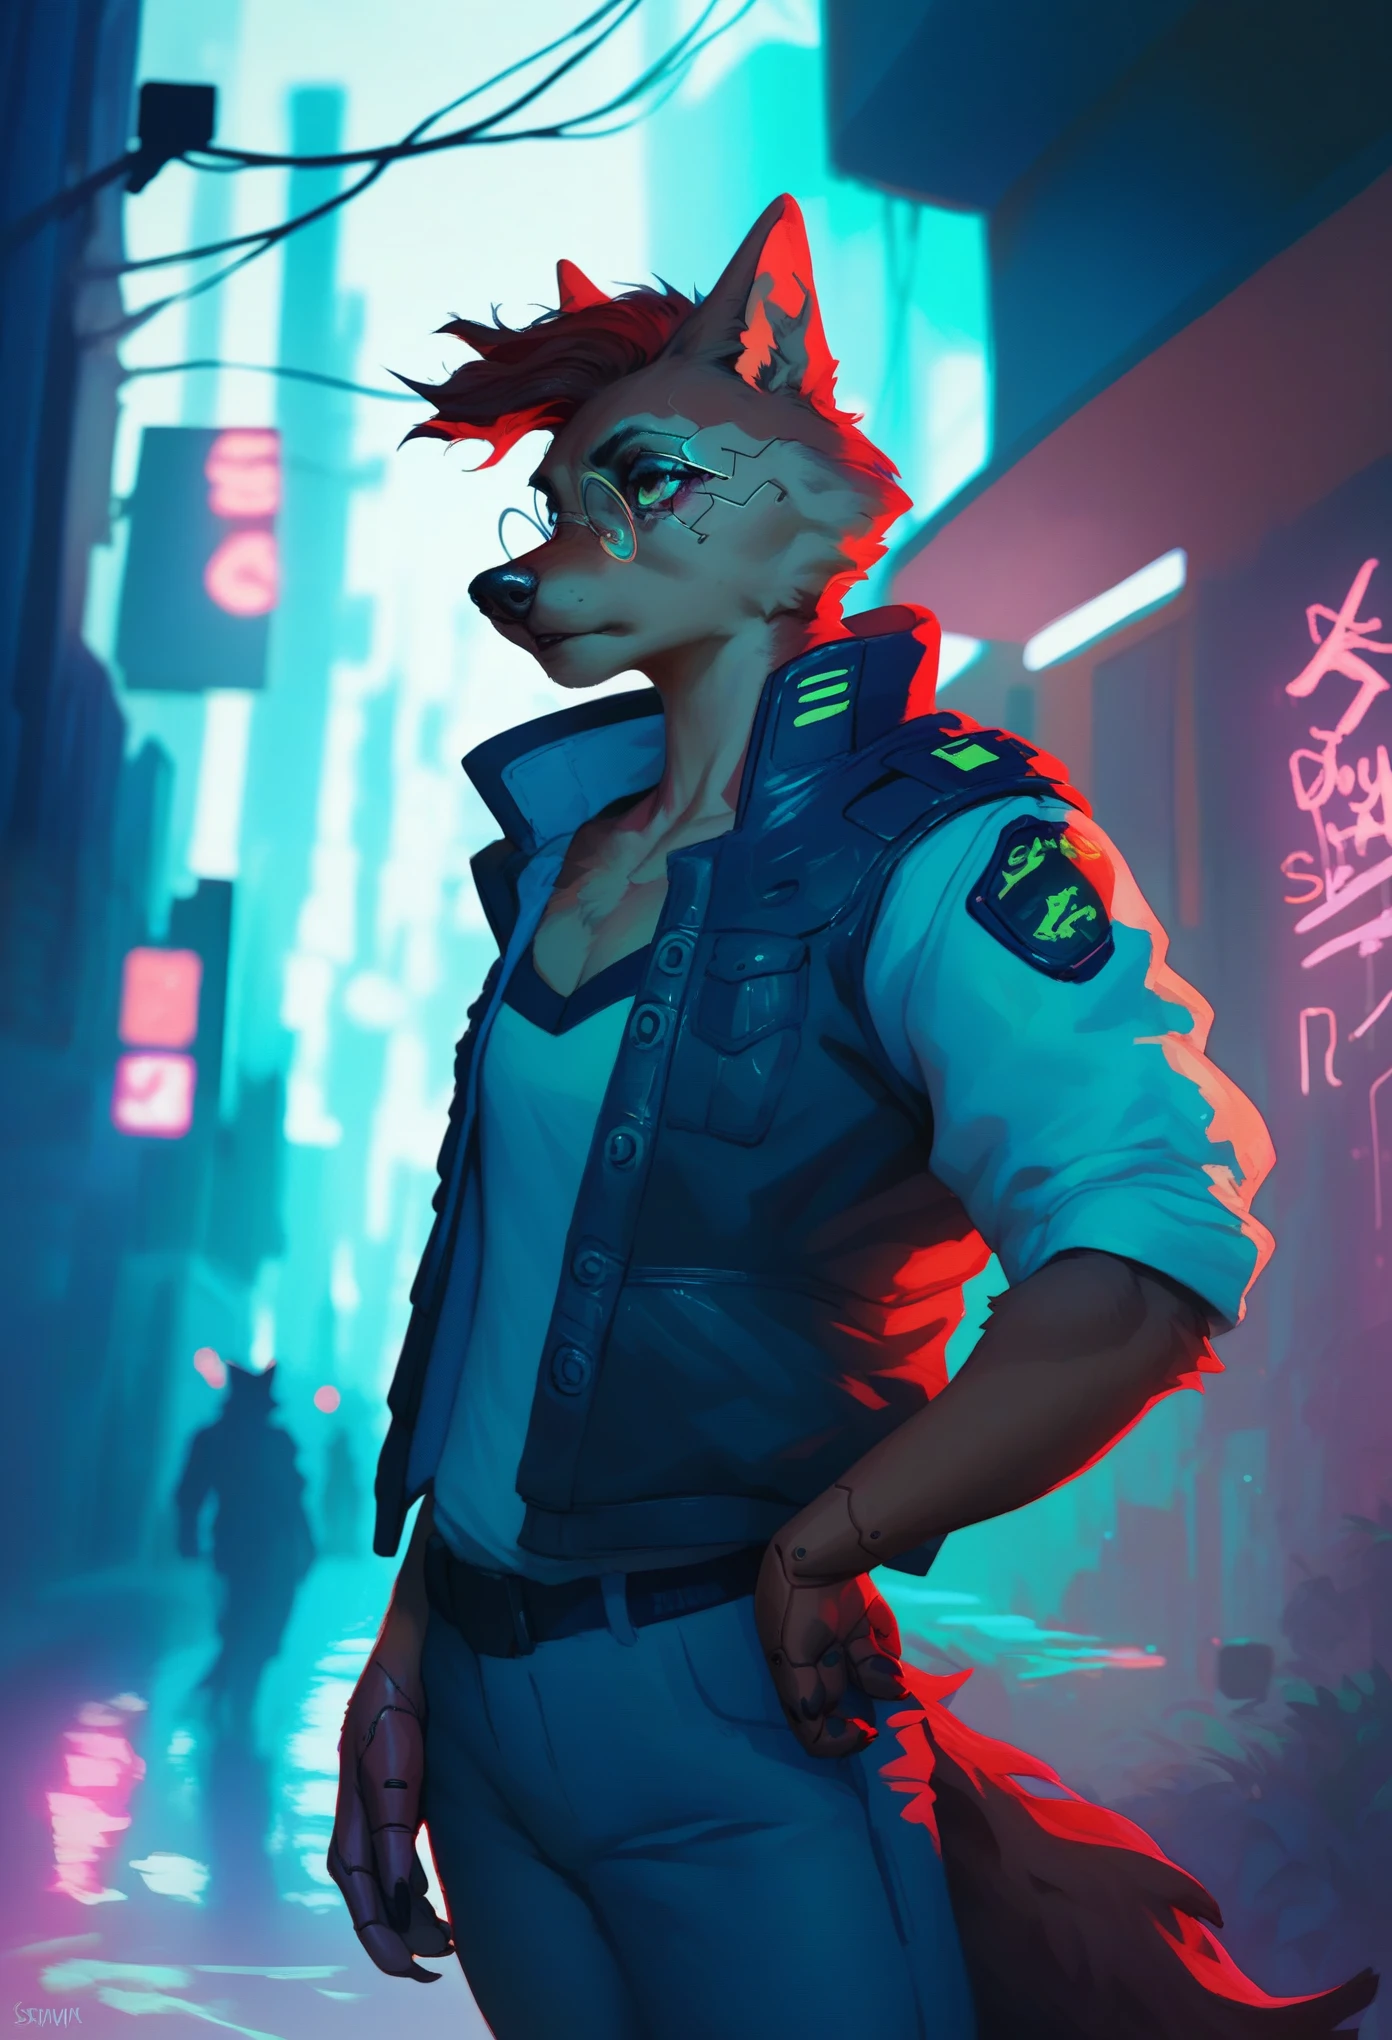 Un oficial de policía lobo negro antropomórfico al estilo cyberpunk., con gafas redondas rojas y ropa de inspiración cyberpunk, parado en un callejón de la ciudad cyberpunk (como ciudad de noche) involucrado en un tiroteo. El personaje debe estar completamente dentro del marco..